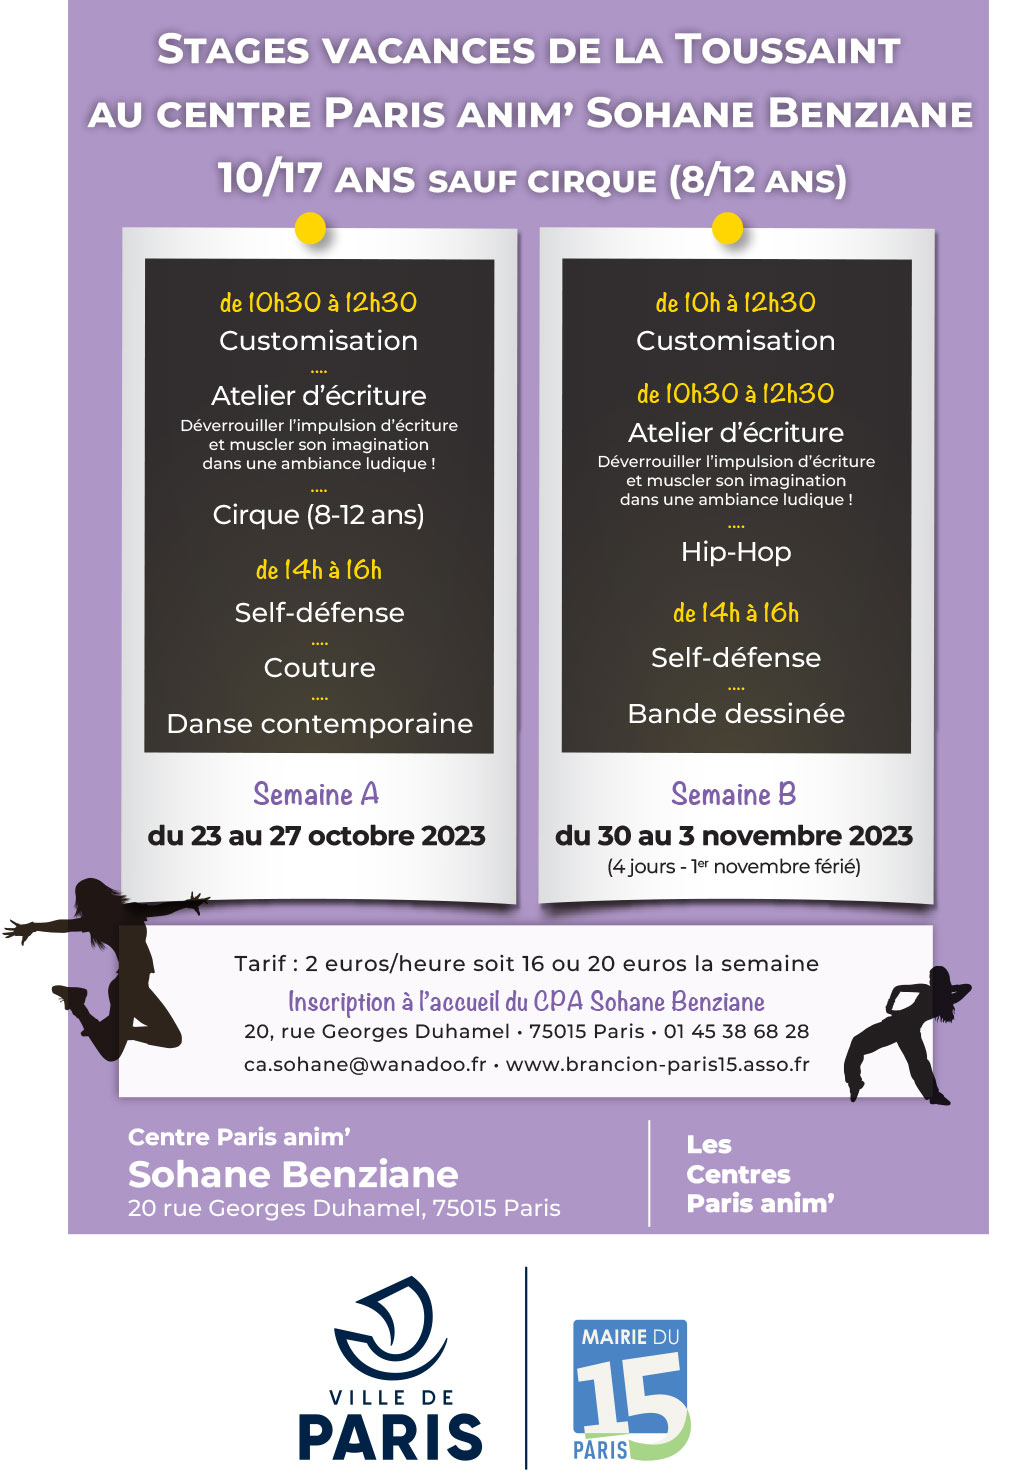 Stages pour adolescents au centre Sohane Benziane PARIS ANIM' 15 pour les vacances de Toussaint du 23 octobre au 3 novembre 2023